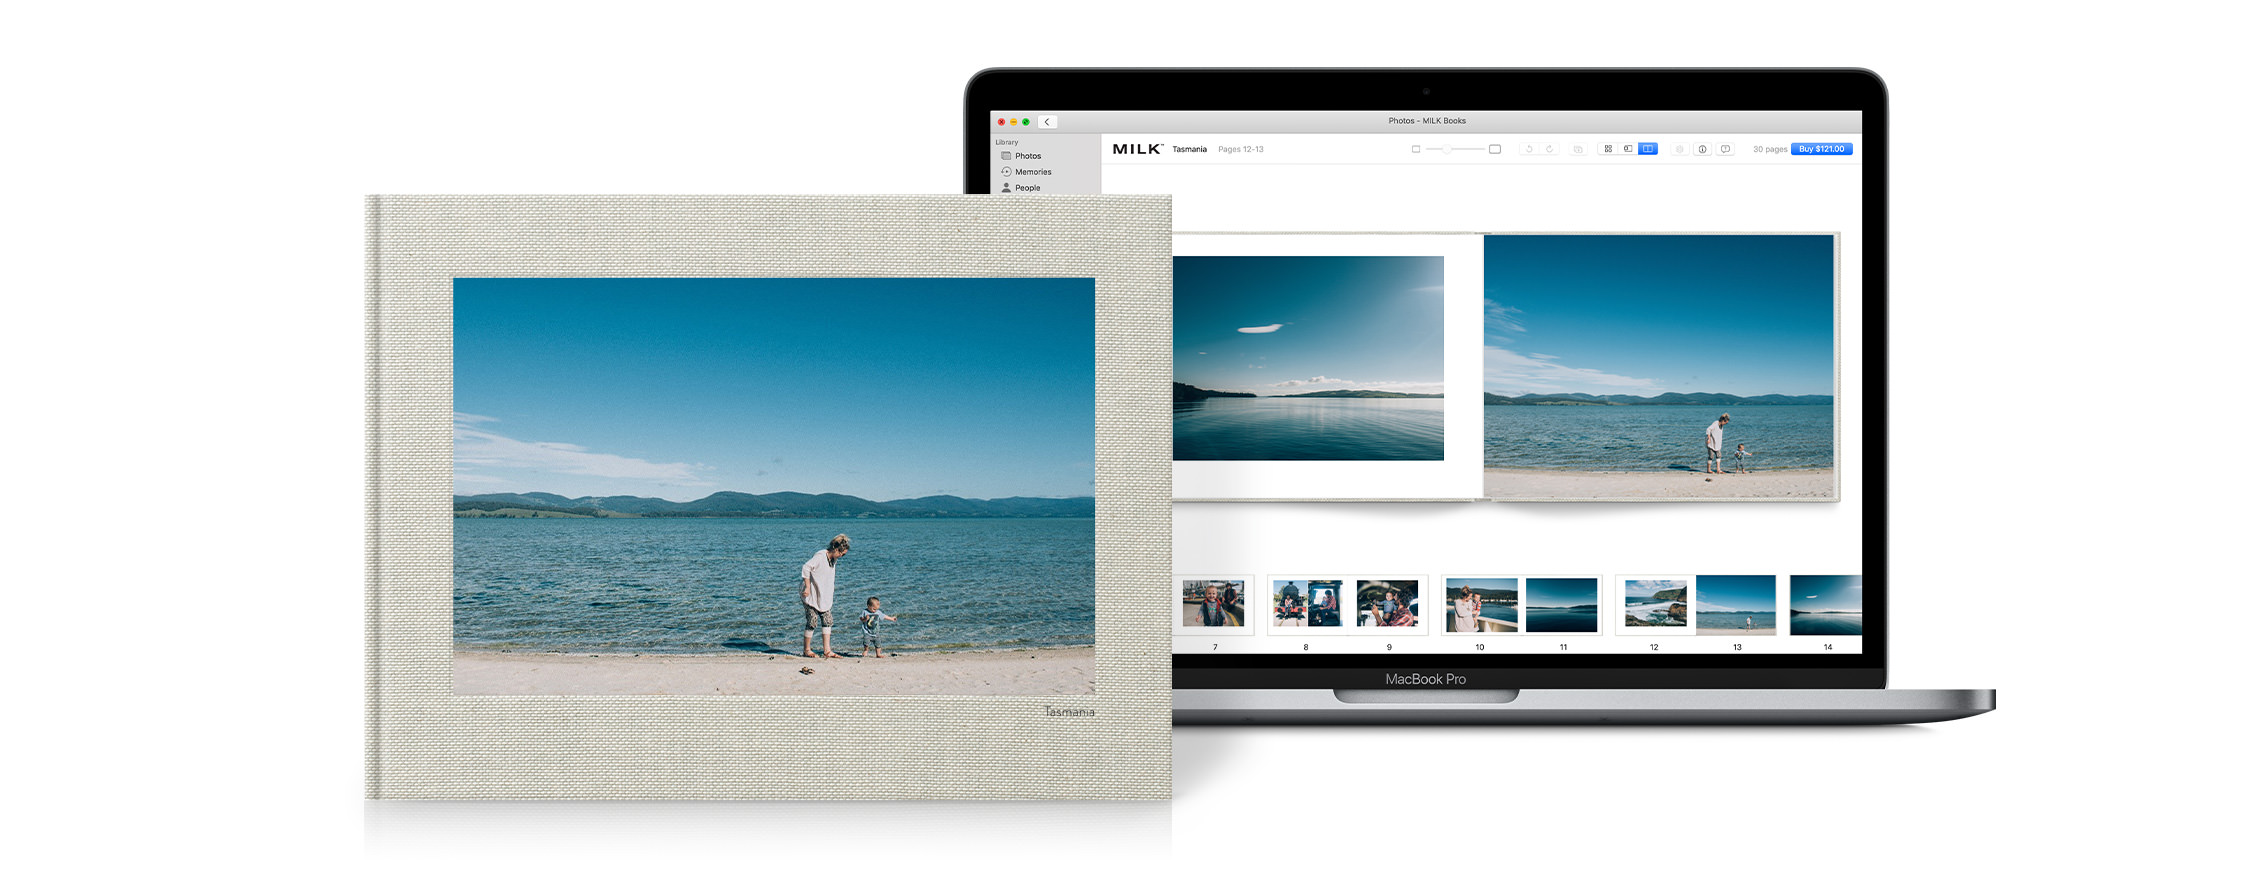 Il Macbook si è aperto per mostrare l'estensione del progetto per Apple Photos. Libro fotografico che mostra il prodotto finito.